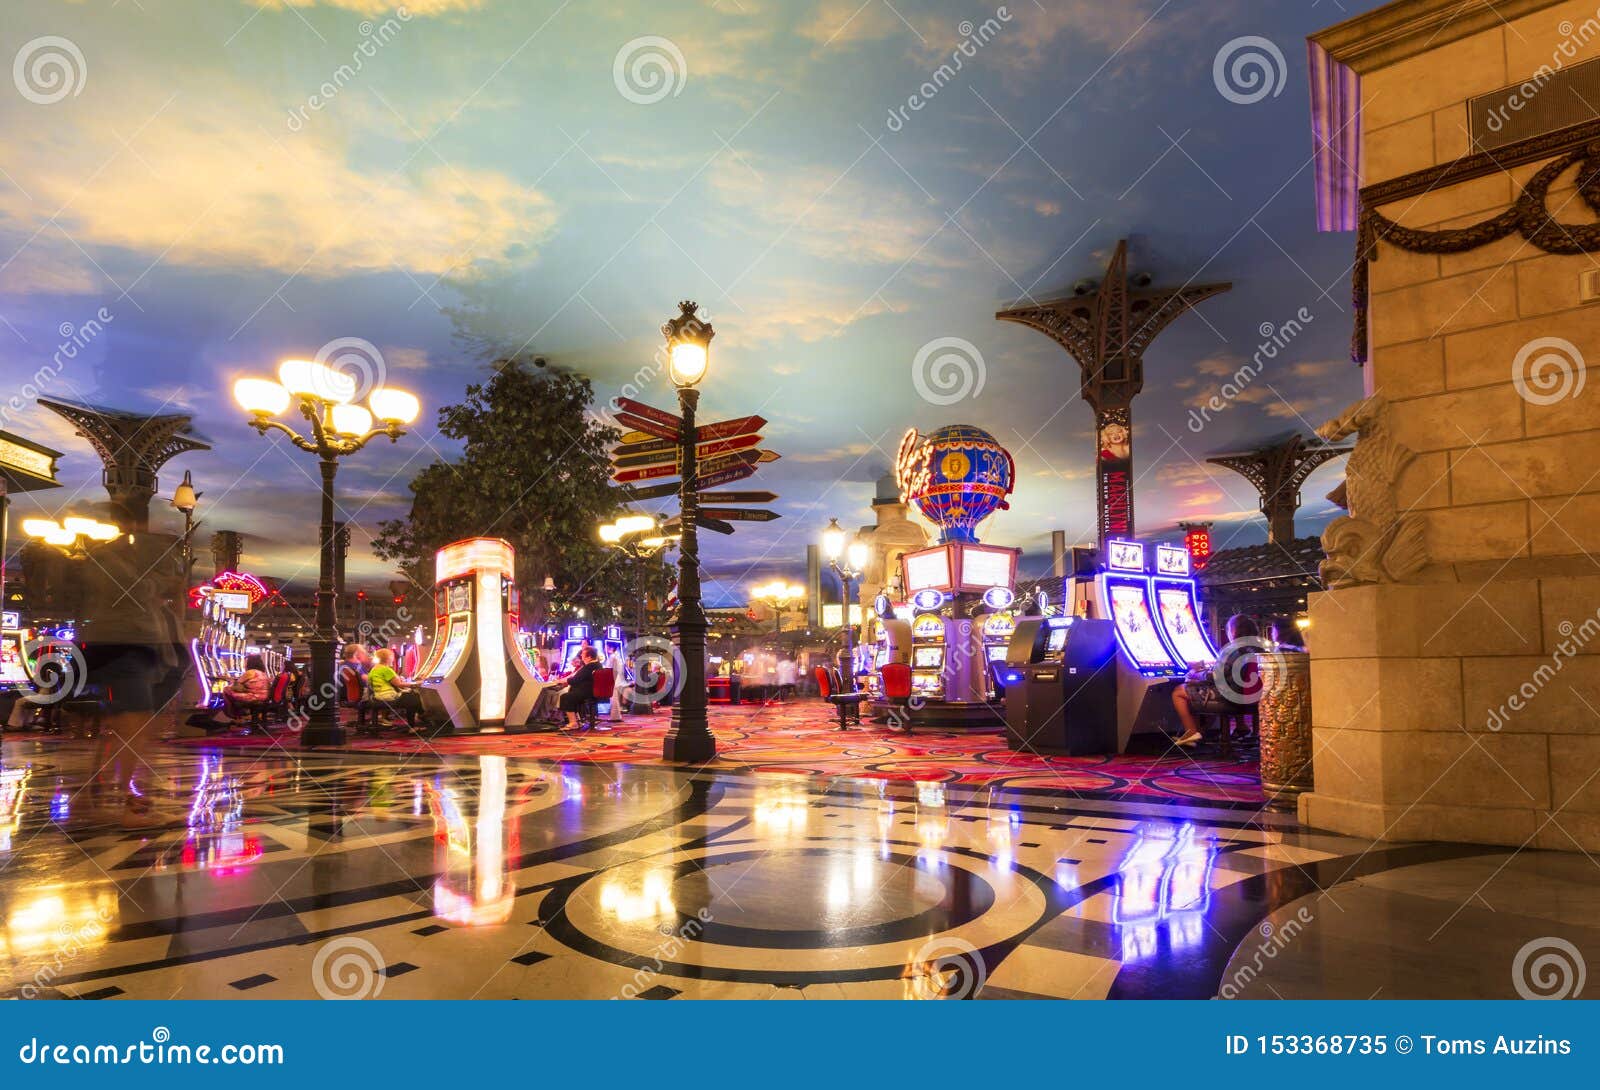 Interior view, Paris Las Vegas Hotel & Casino, Las Vegas Boulevard